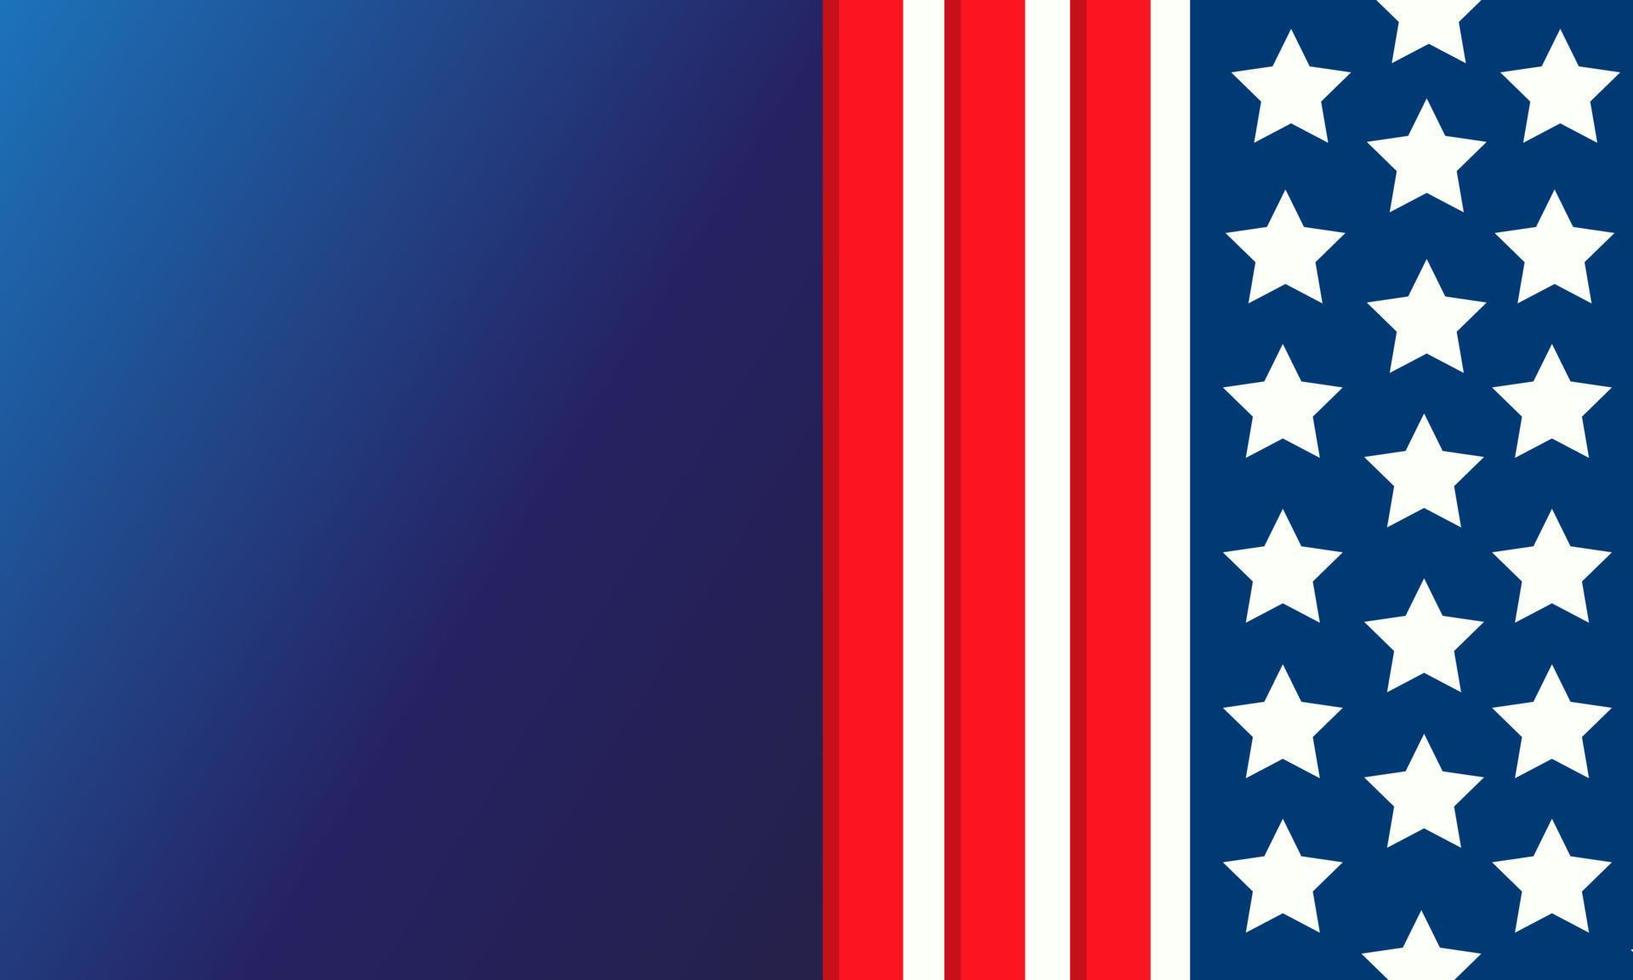 estilo de la bandera estadounidense, estrellas y rayas, estados unidos de américa sobre fondo azul vector